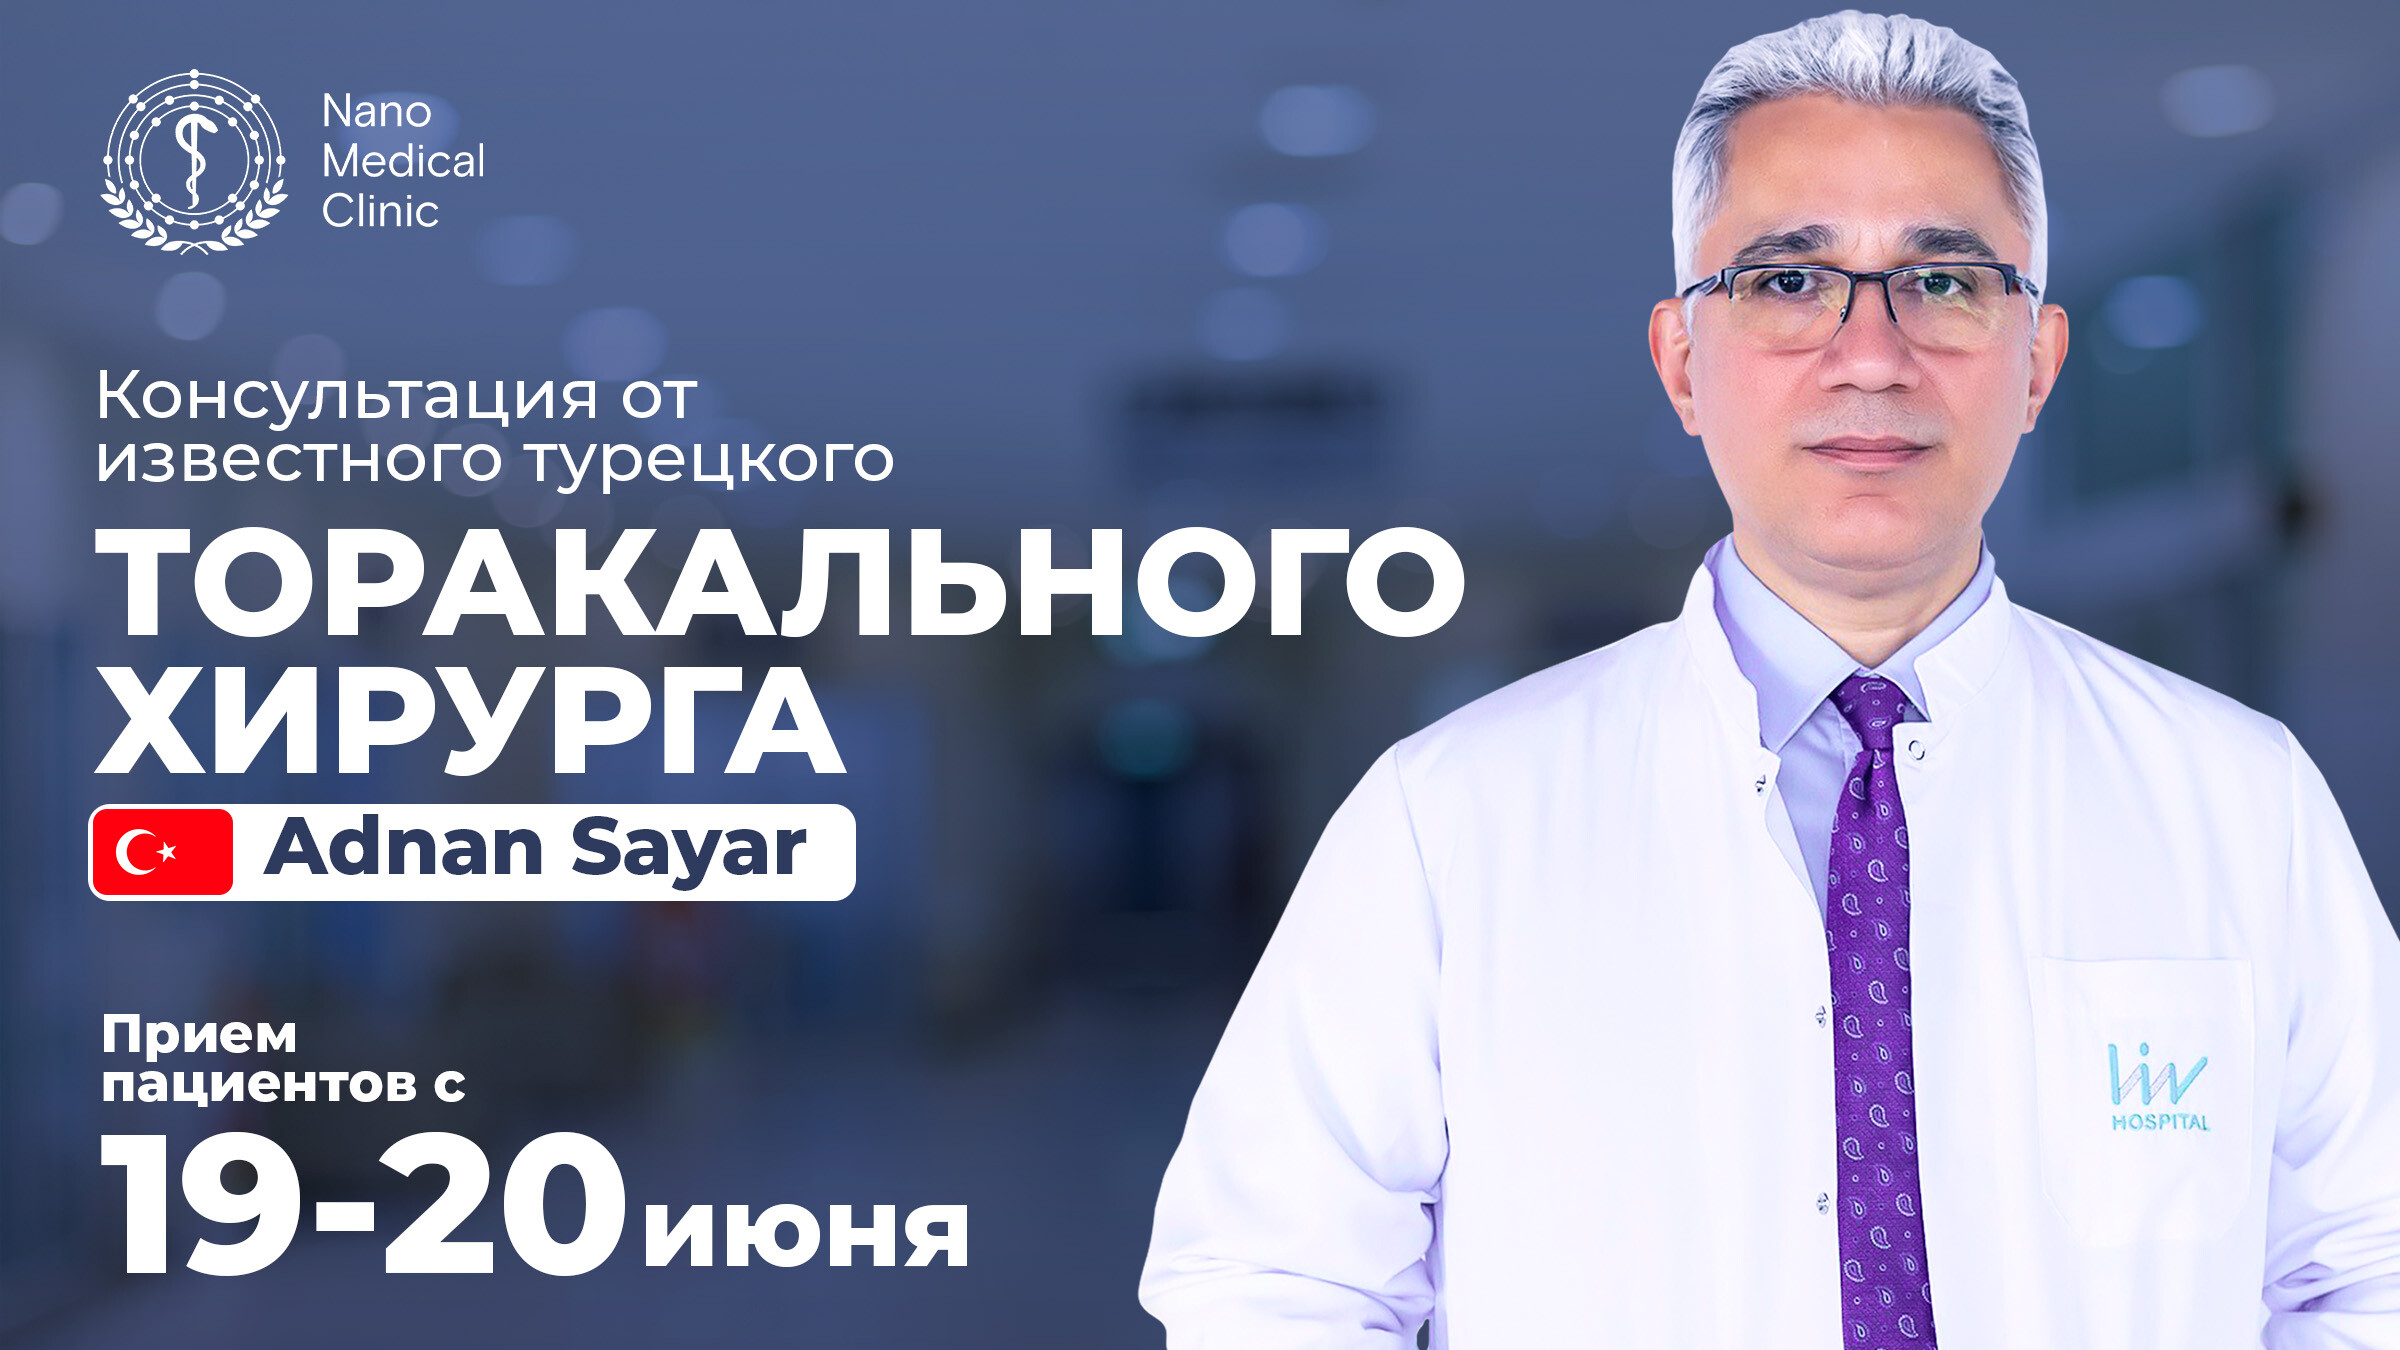 Хирург из Турции проведёт консультации по пересадке и лечению рака лёгких в Nano Medical Clinic